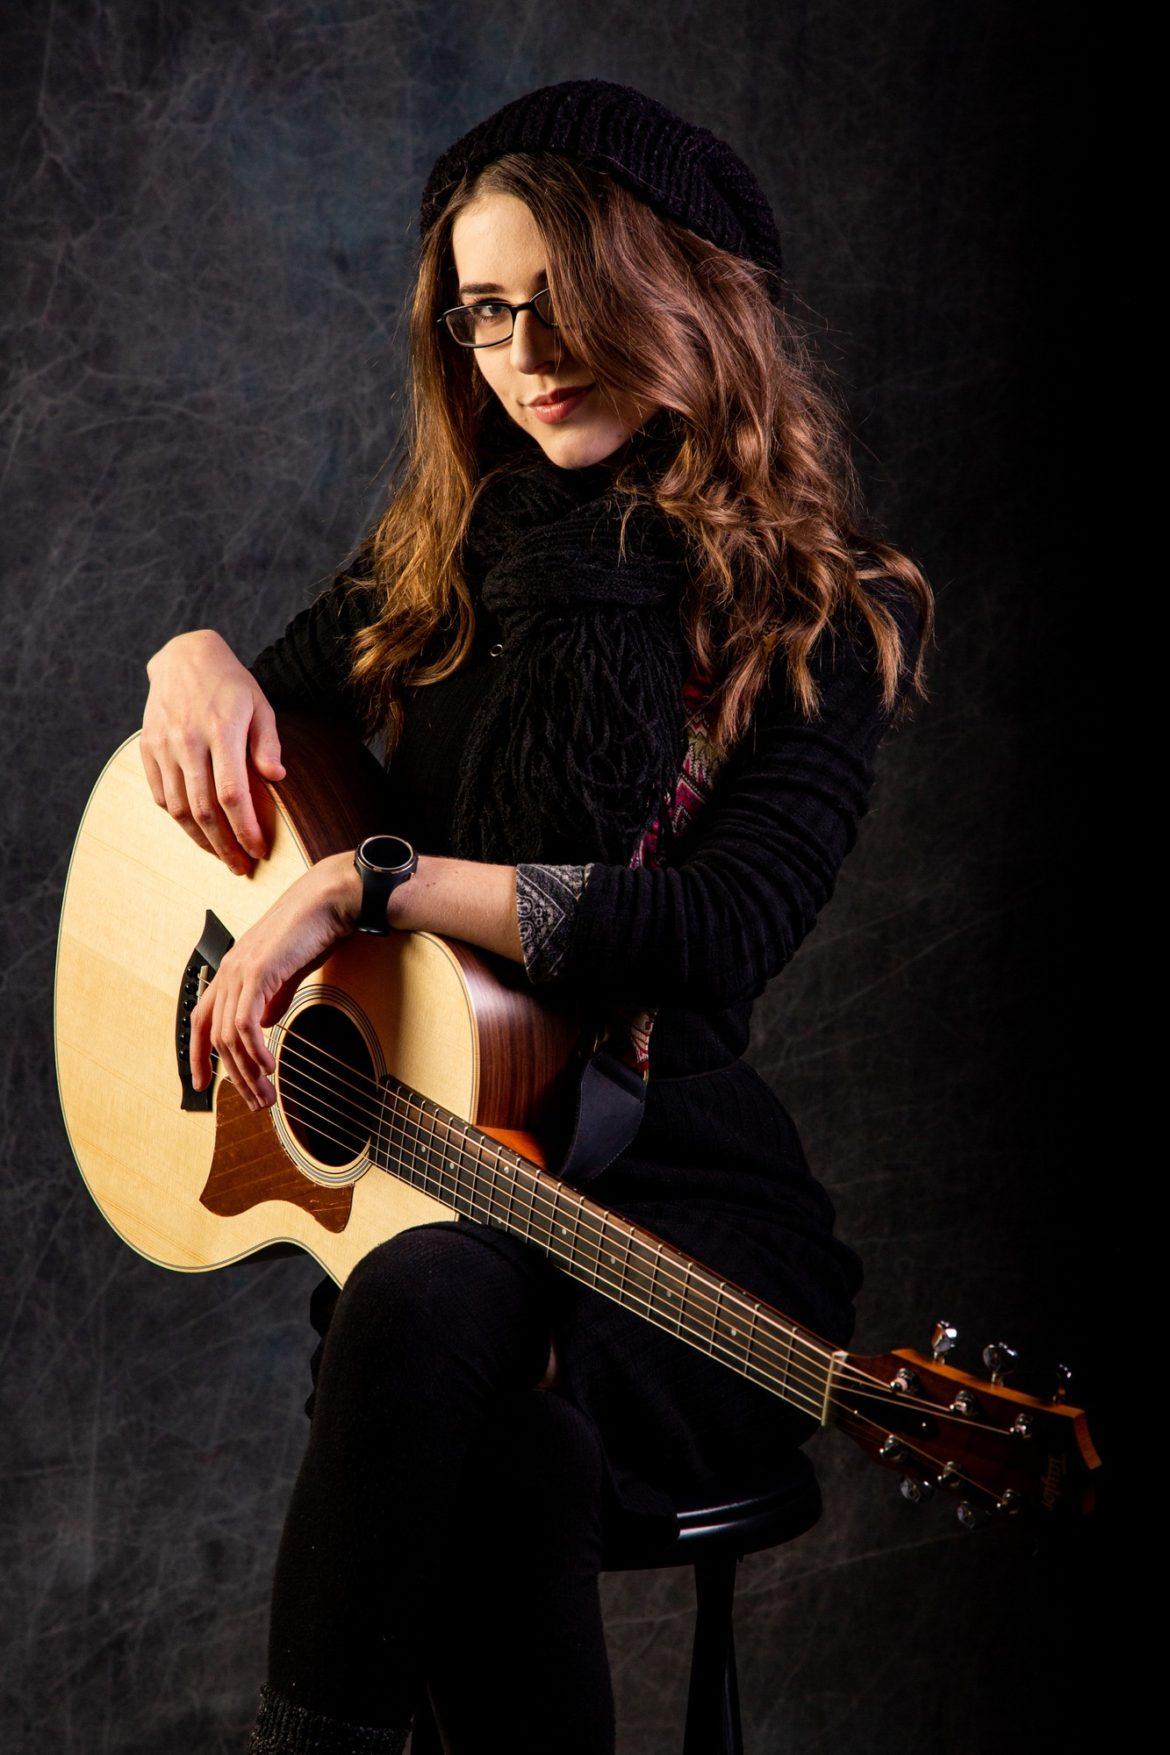 A female musician in a black dress hold a guitar